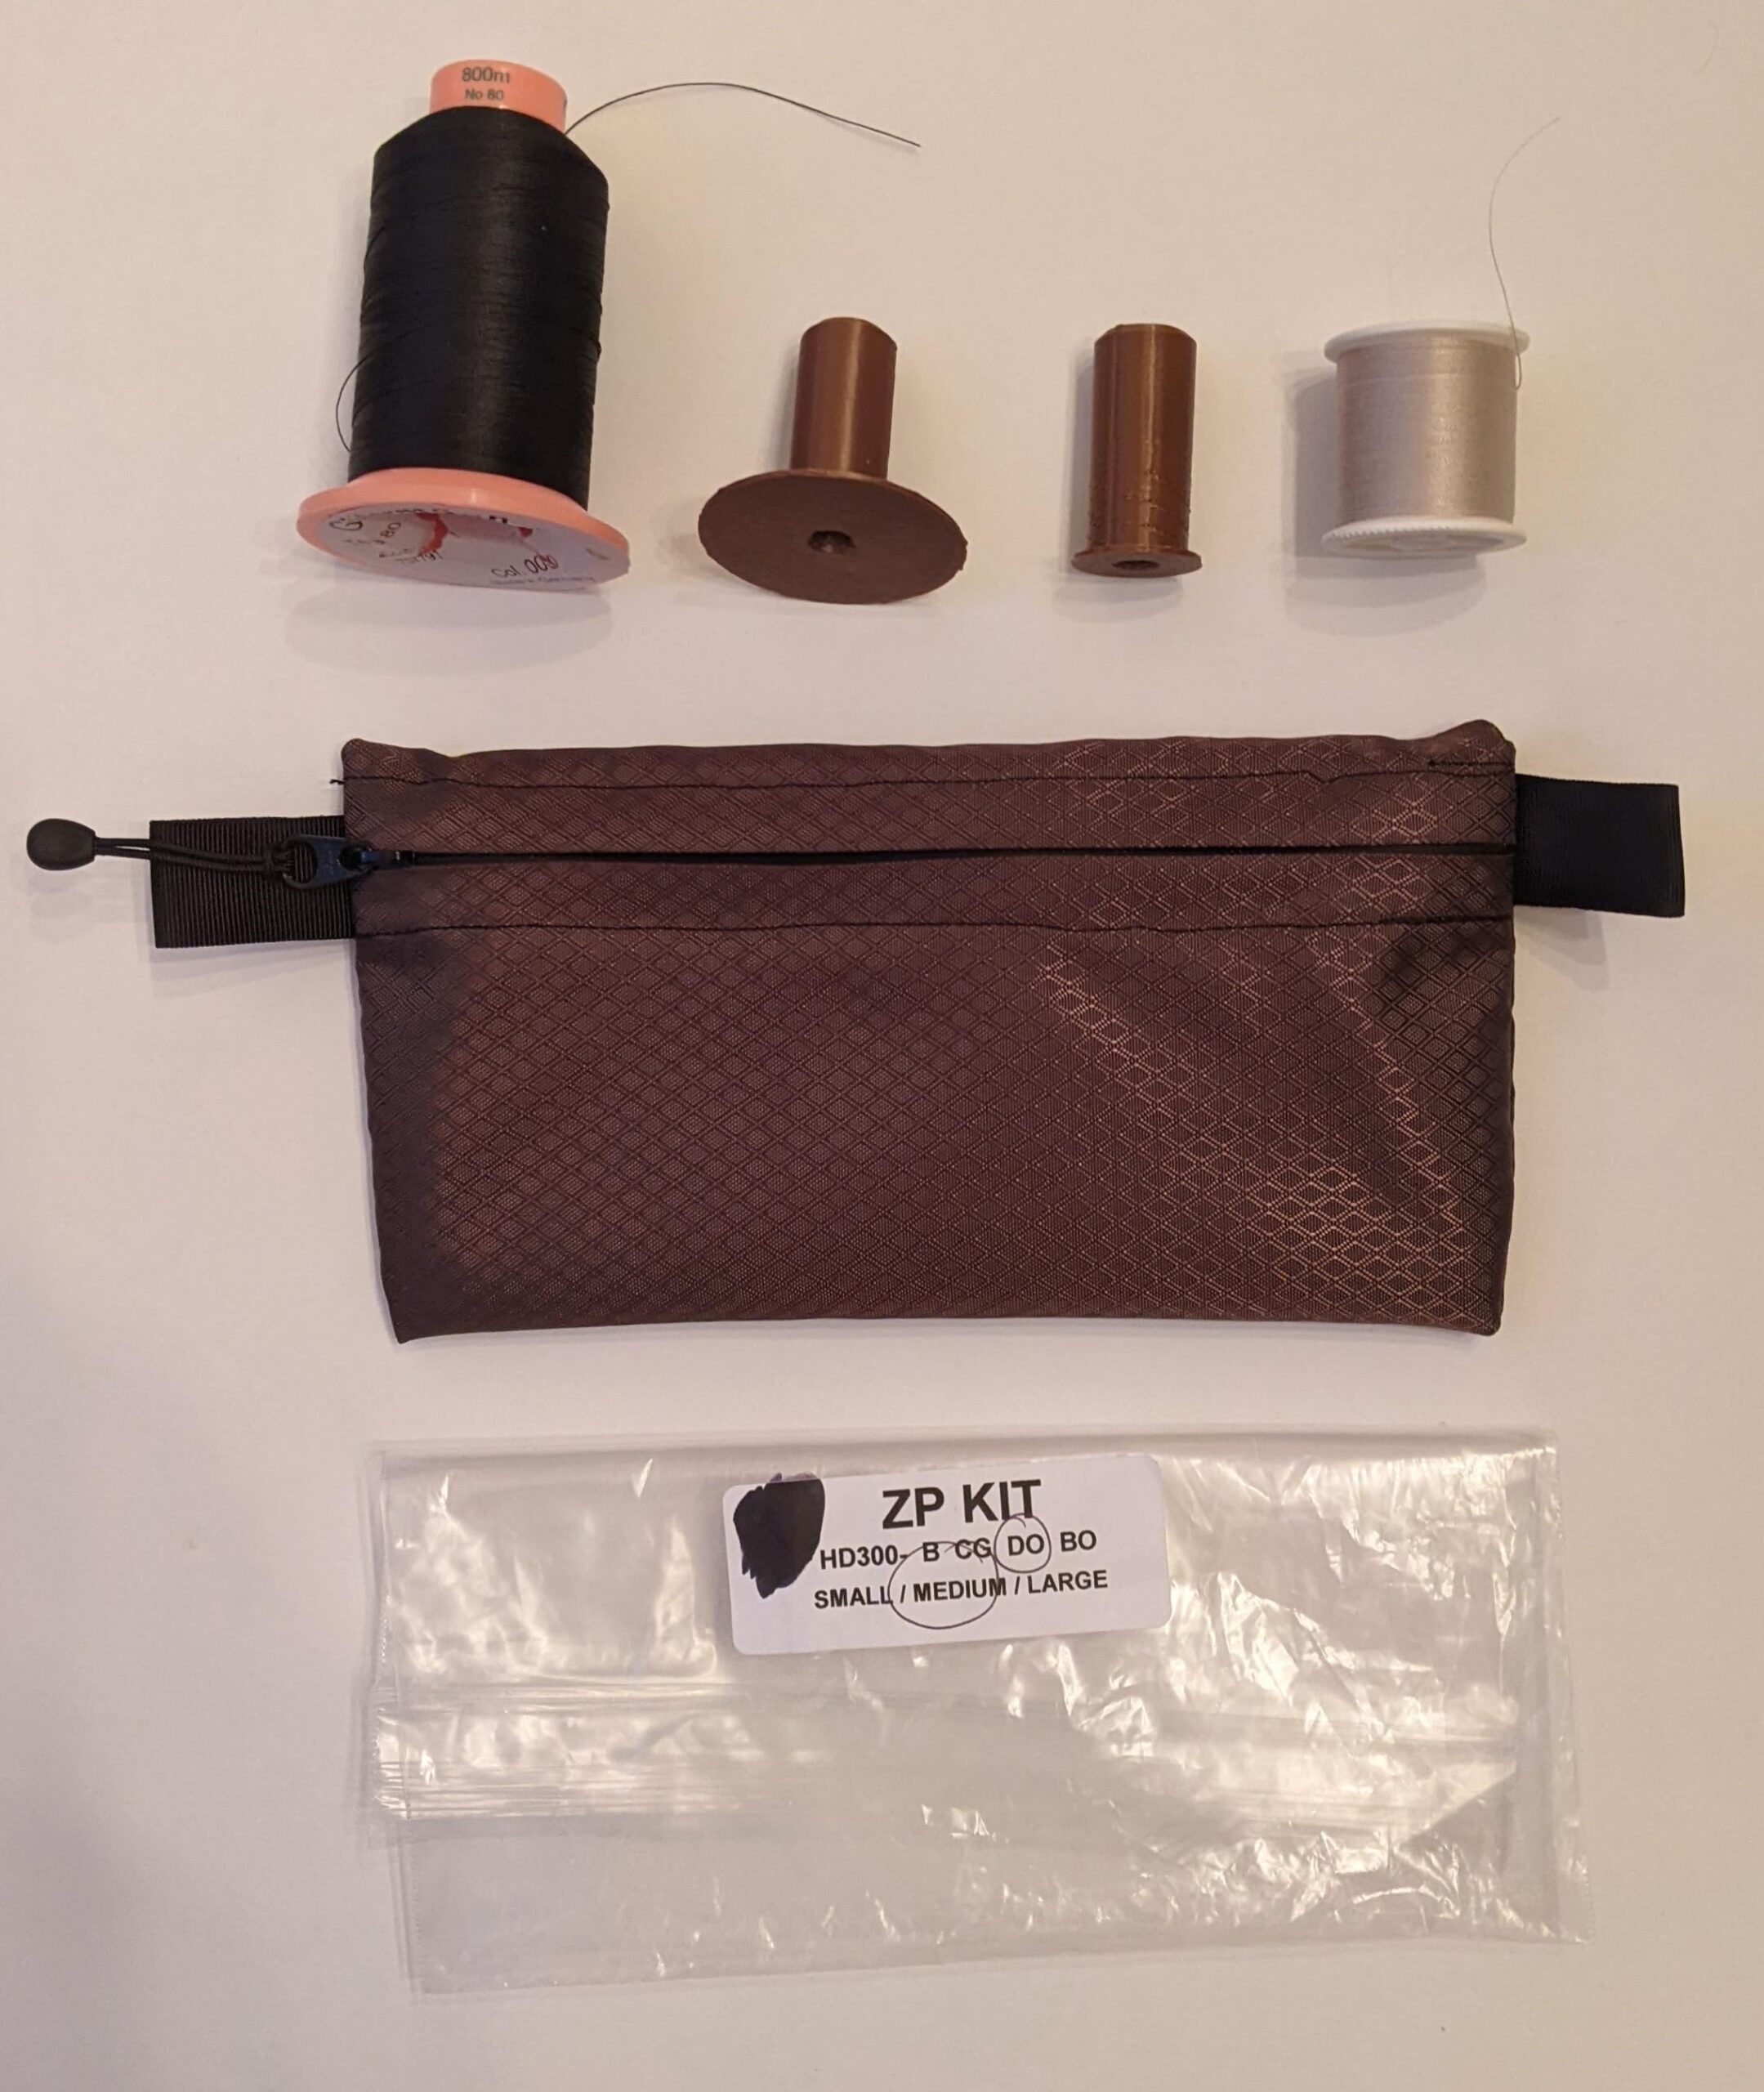 RBTR Zipper Pouch kit, all zipped up